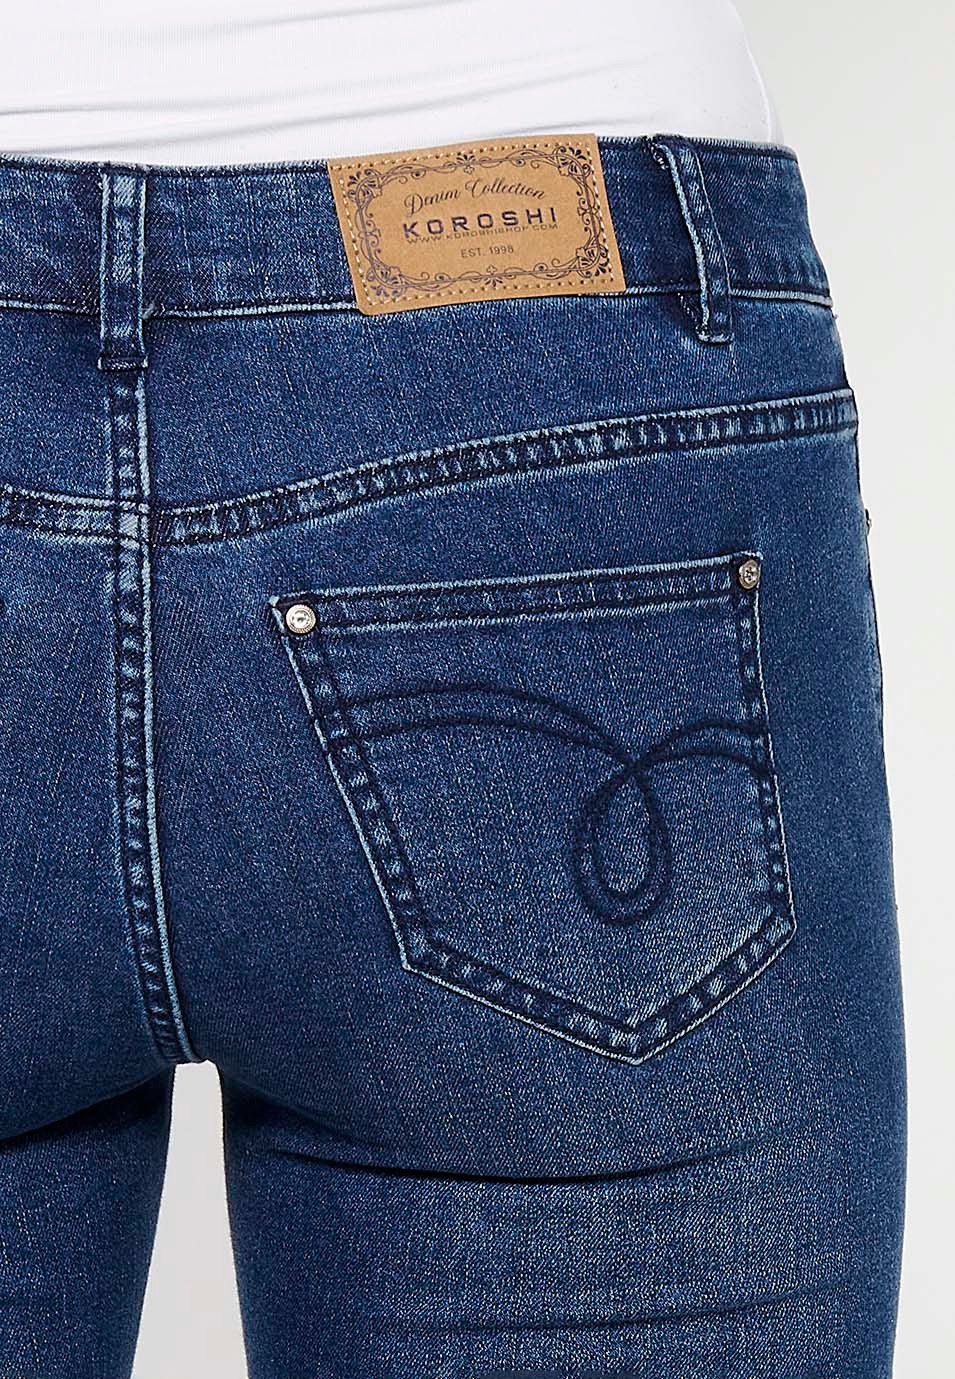 Piraten-Jeanshose mit Stickerei und Reißverschluss vorne in Blau für Damen 7